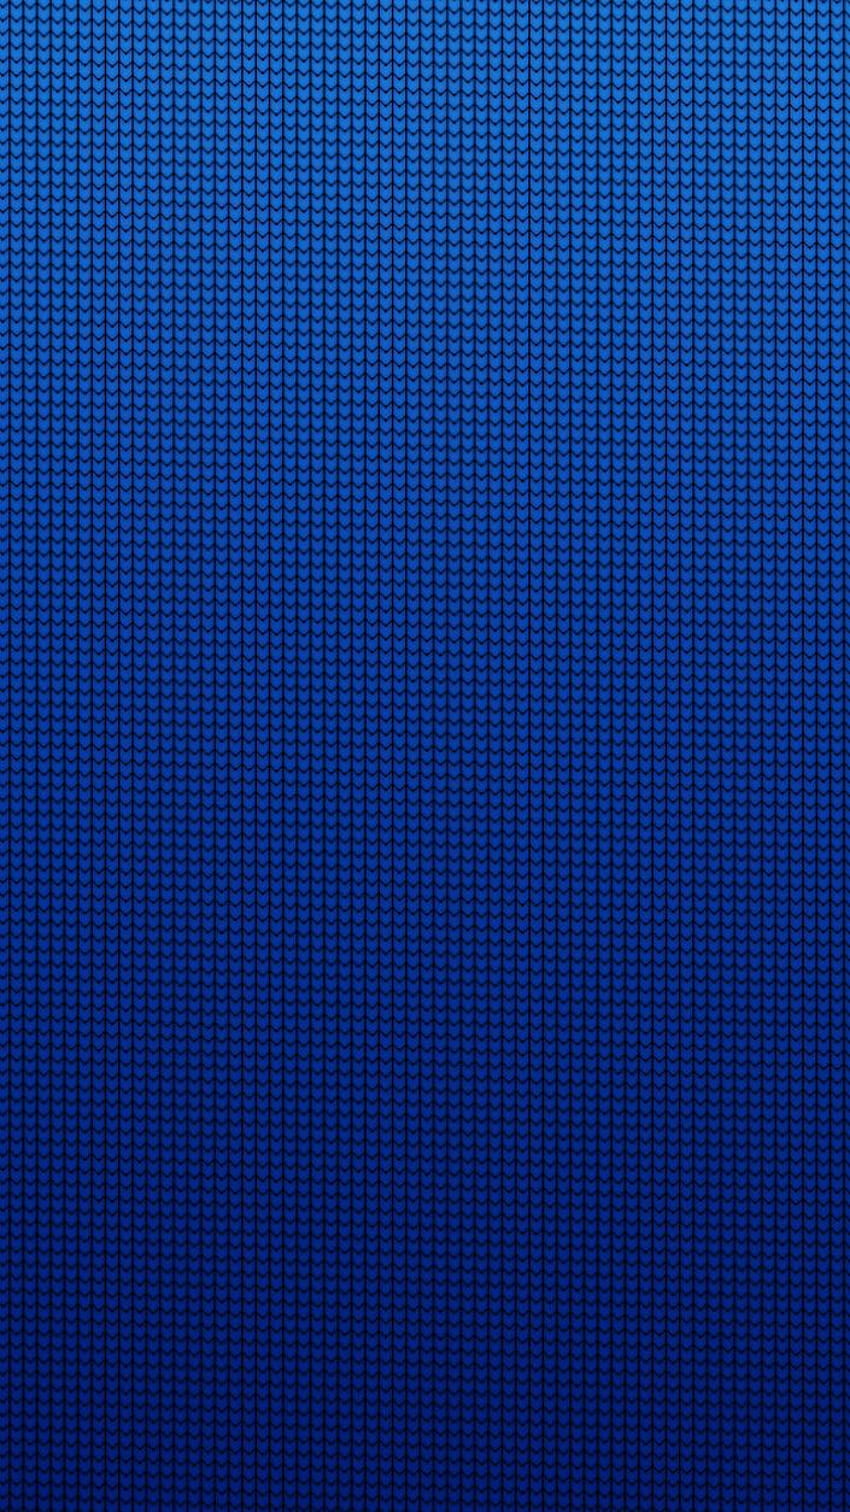 Mang lại sự mới mẻ, tươi trẻ và năng động cho điện thoại của bạn với Blue Abstract Art Phone Background. Với màu sắc rực rỡ và độ khó hiểu, hình nền này chắc chắn sẽ làm bạn cảm thấy thú vị và tươi mới trong thế giới kỹ thuật số.